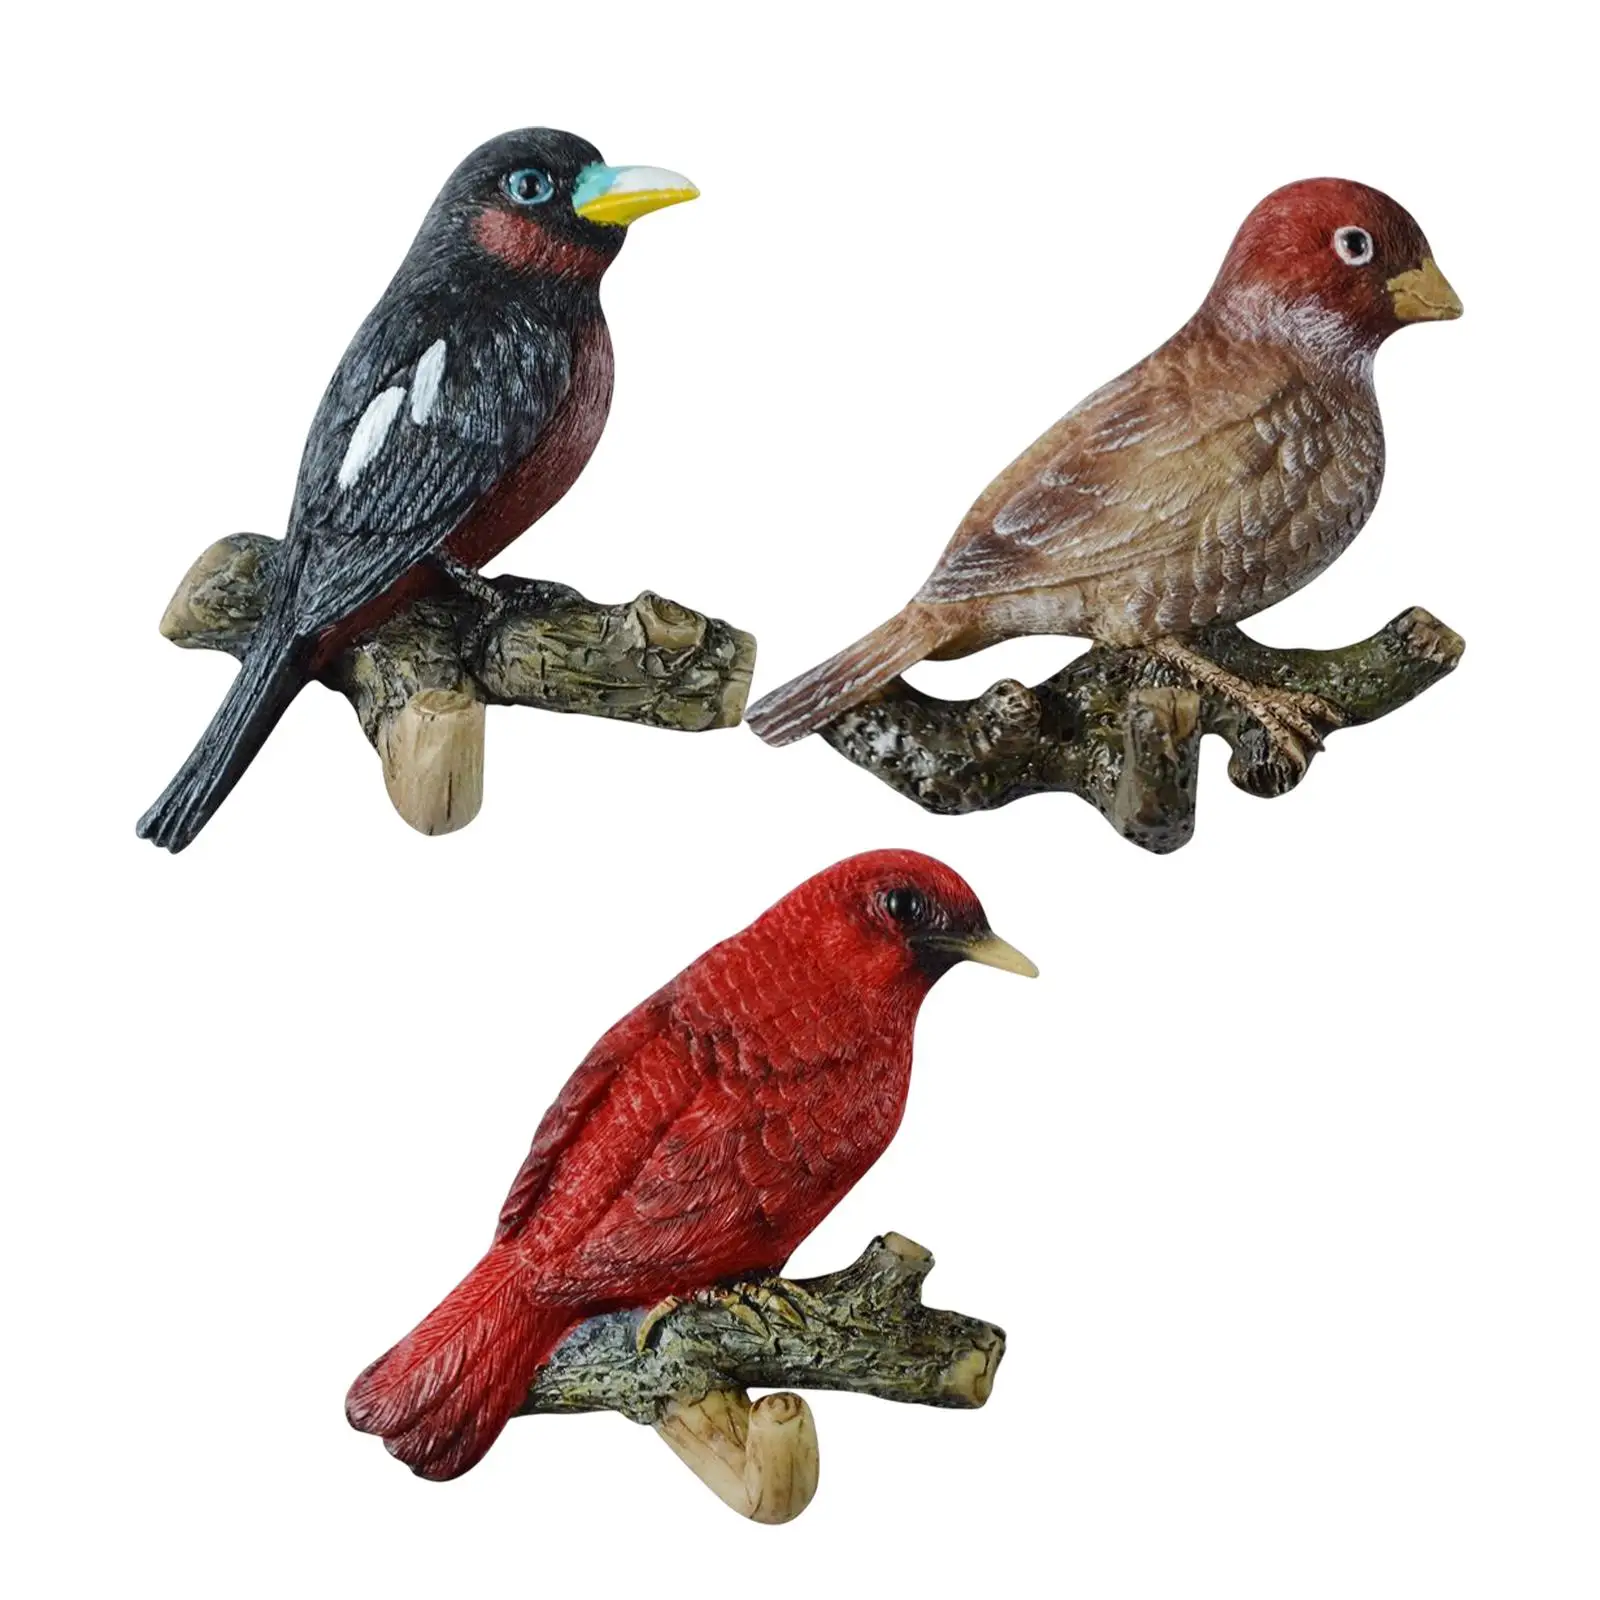 

Фотофон с изображением птиц на открытом пространстве для одежды, ключей и шарфов